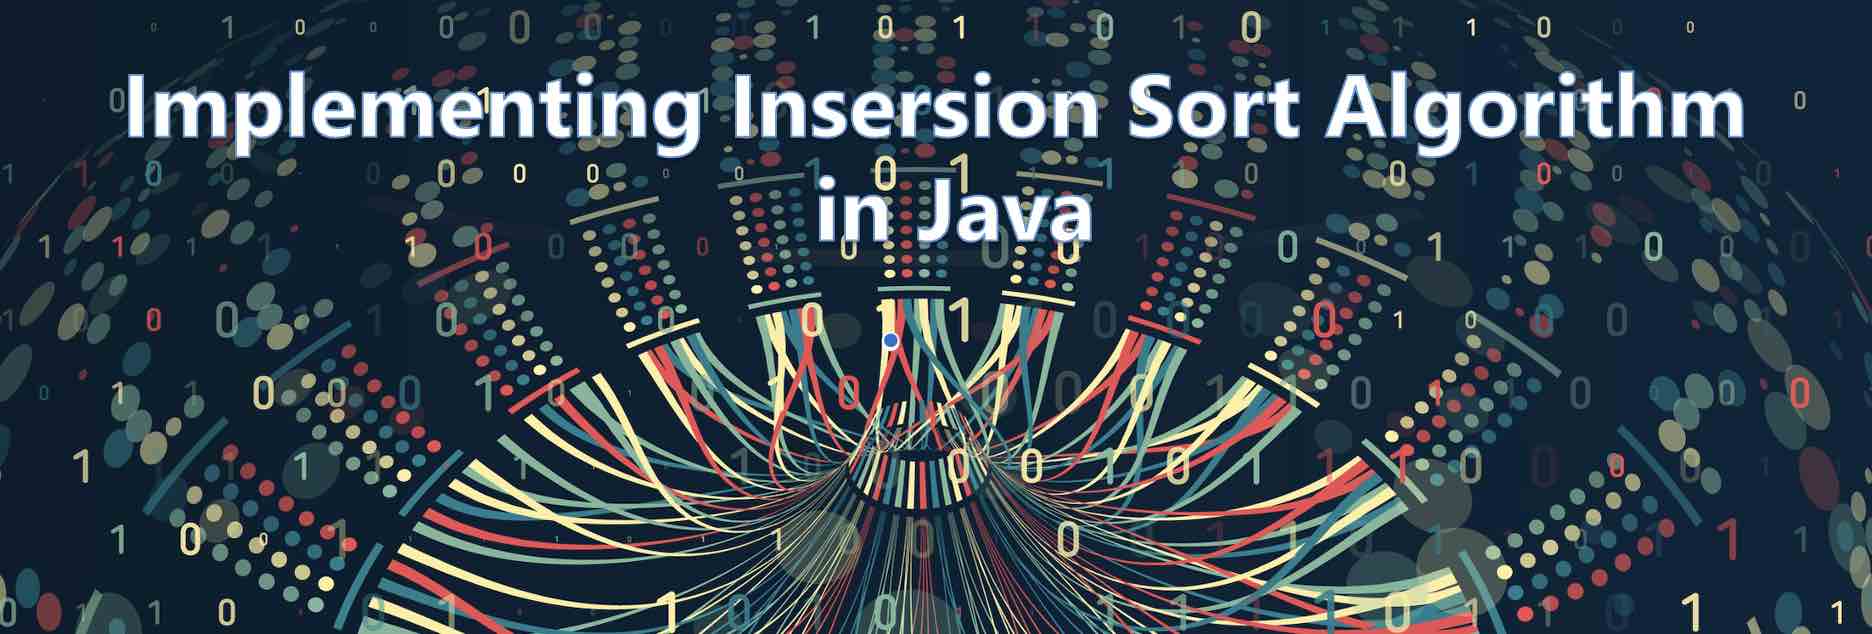 Implementing Insertion Sort Algorithm in Java Program